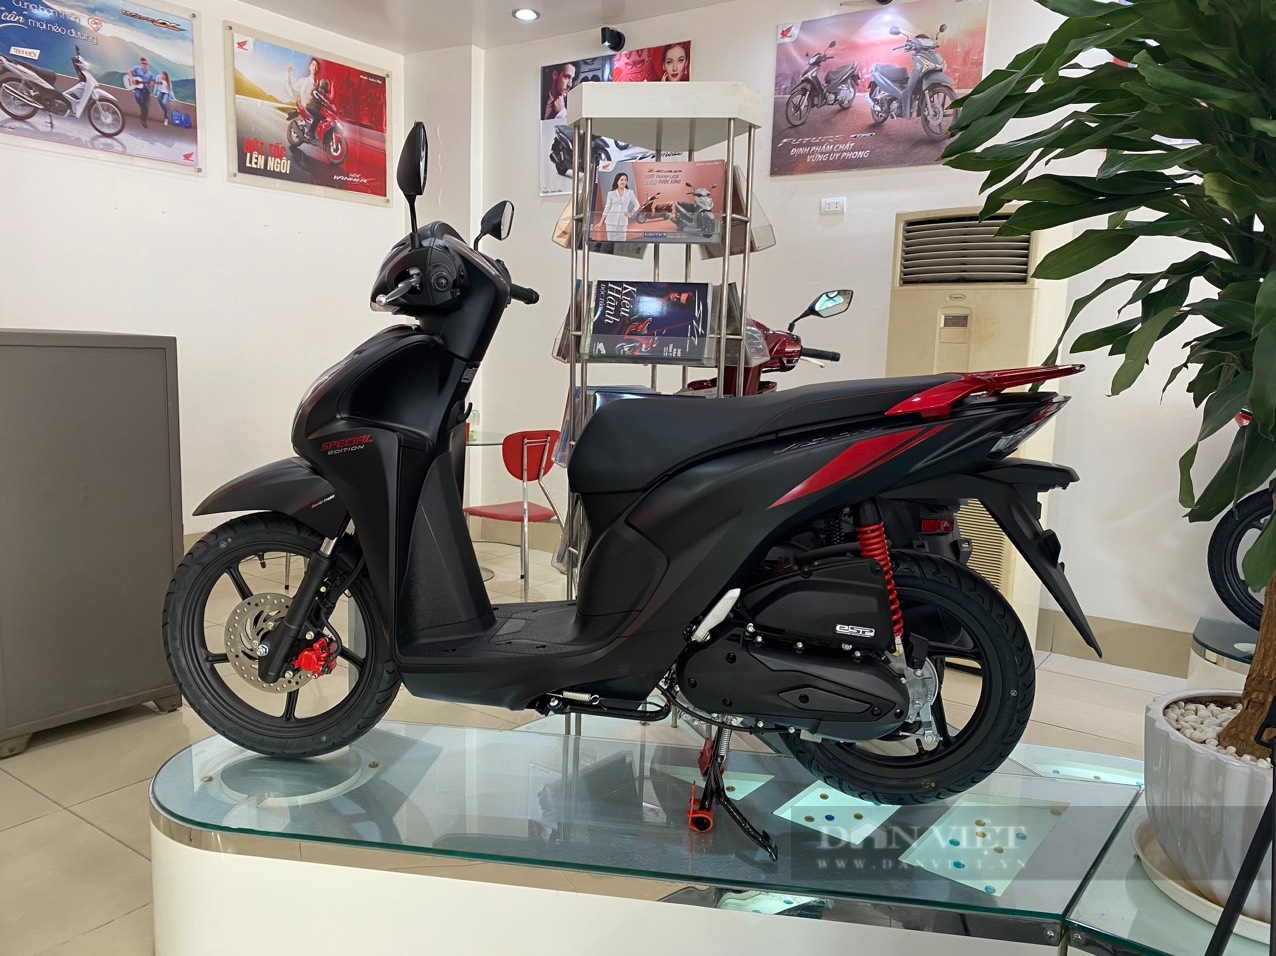 Honda SH Mode 125 ABS 2021 Sporty  Cửa Hàng Xe Máy Anh Lộc  Mua Bán Xe Máy  Cũ Mới Chất Lượng Tại Hà Nội